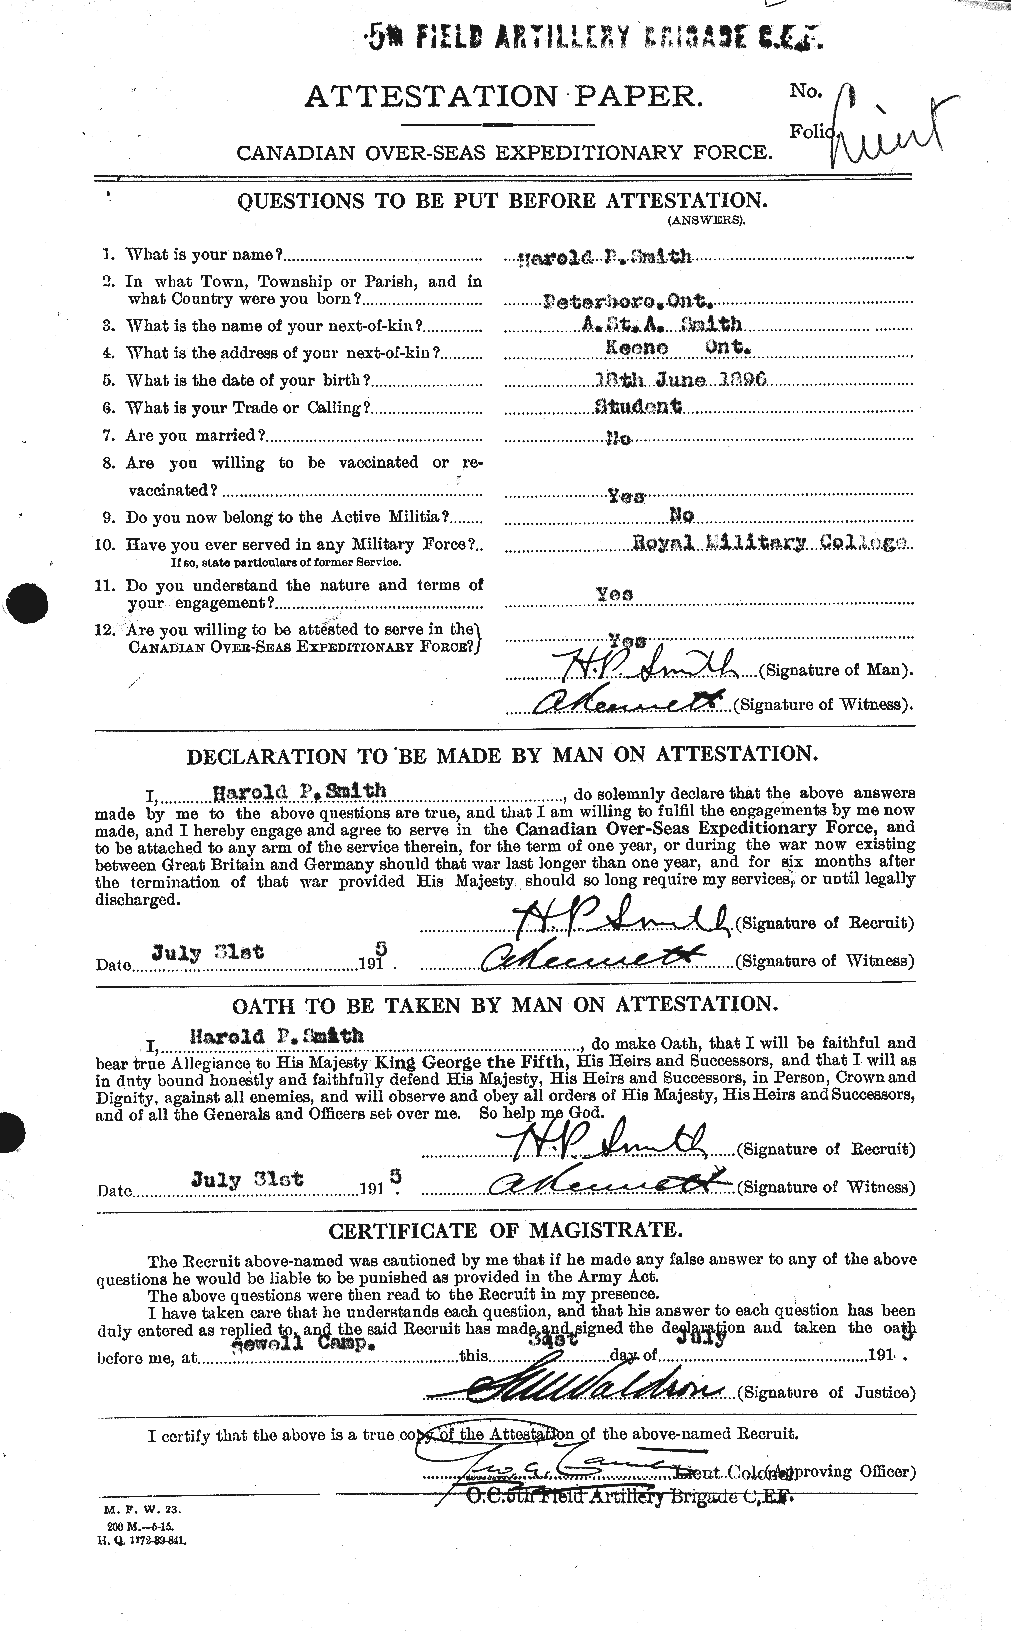 Dossiers du Personnel de la Première Guerre mondiale - CEC 106194a